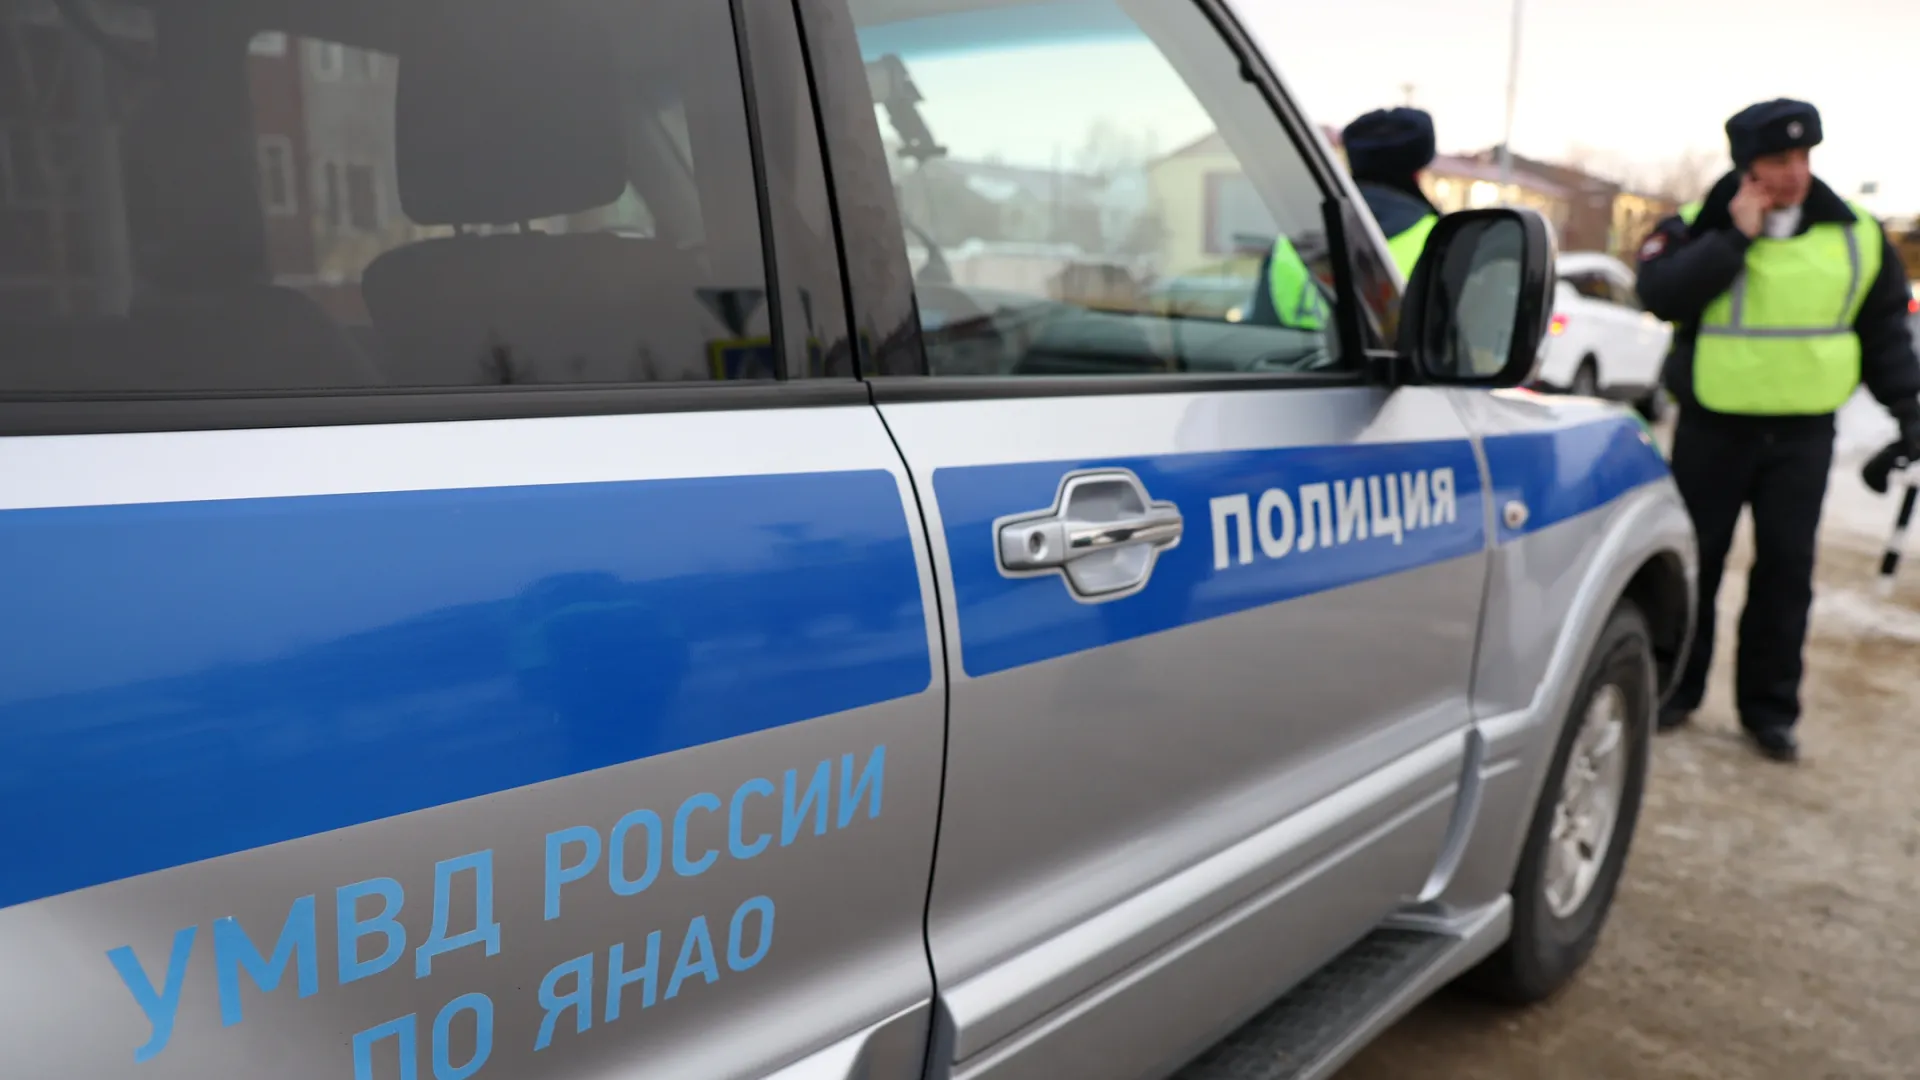 Причины женской драки установит полиция. Фото: Андрей Ткачев / «Ямал-Медиа»